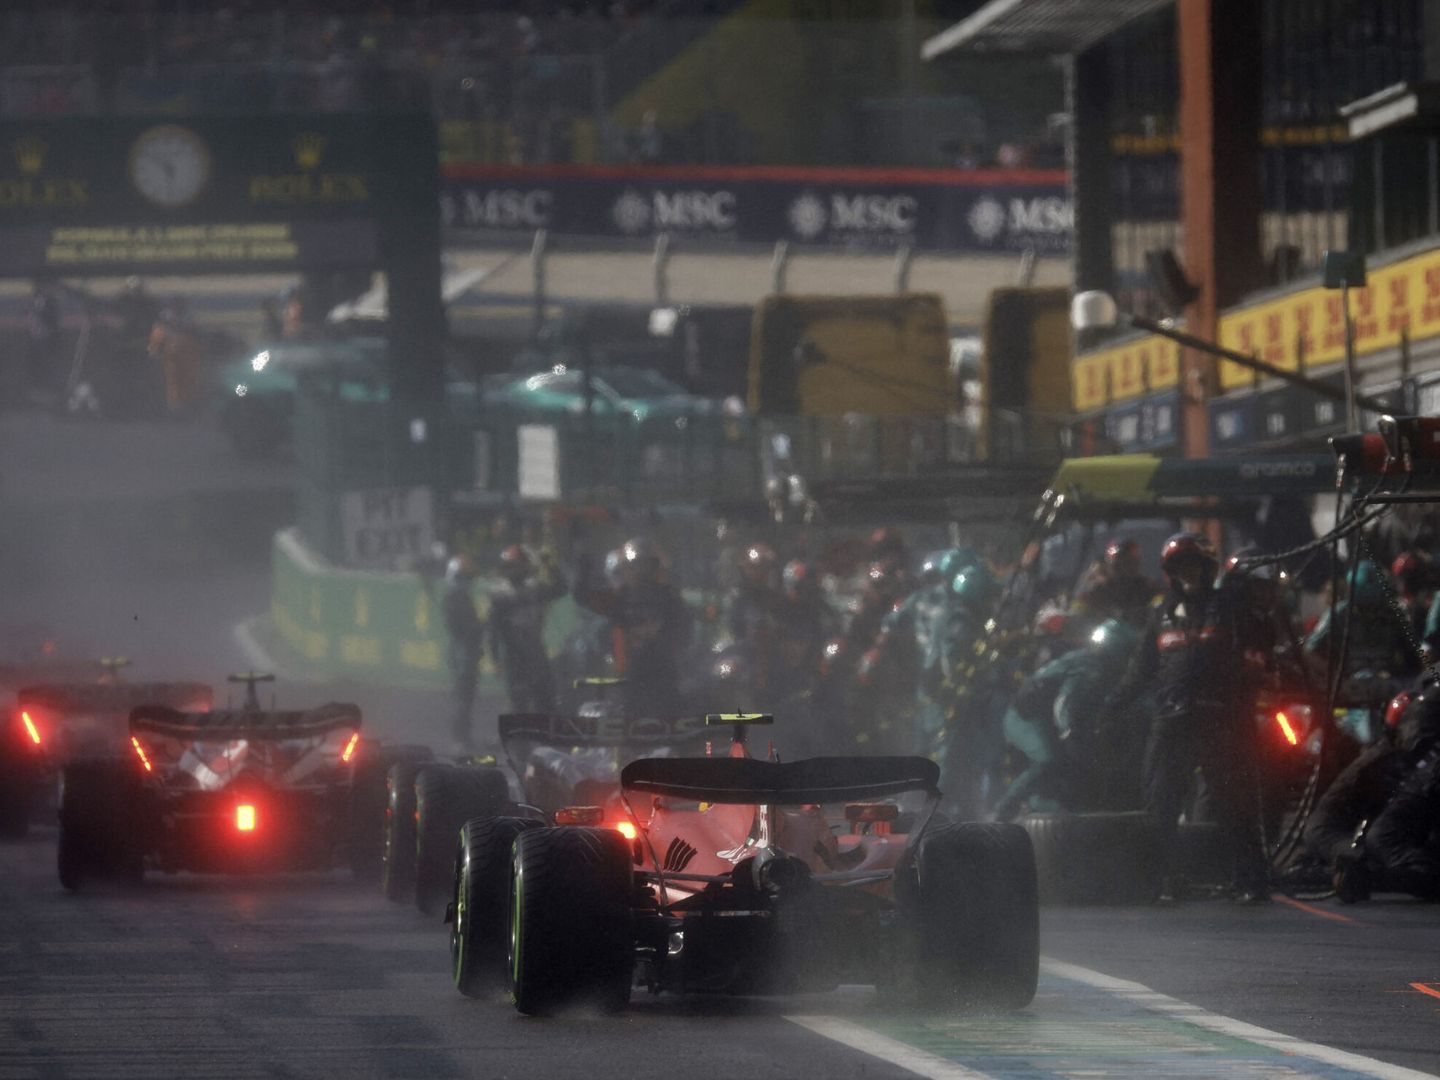 La posición del equipo Ferrari, al comienzo del pit-lane contribuyó al problema de quedarse detrás de todo el tráfico (REUTERS/Kenzo Tribouillard)